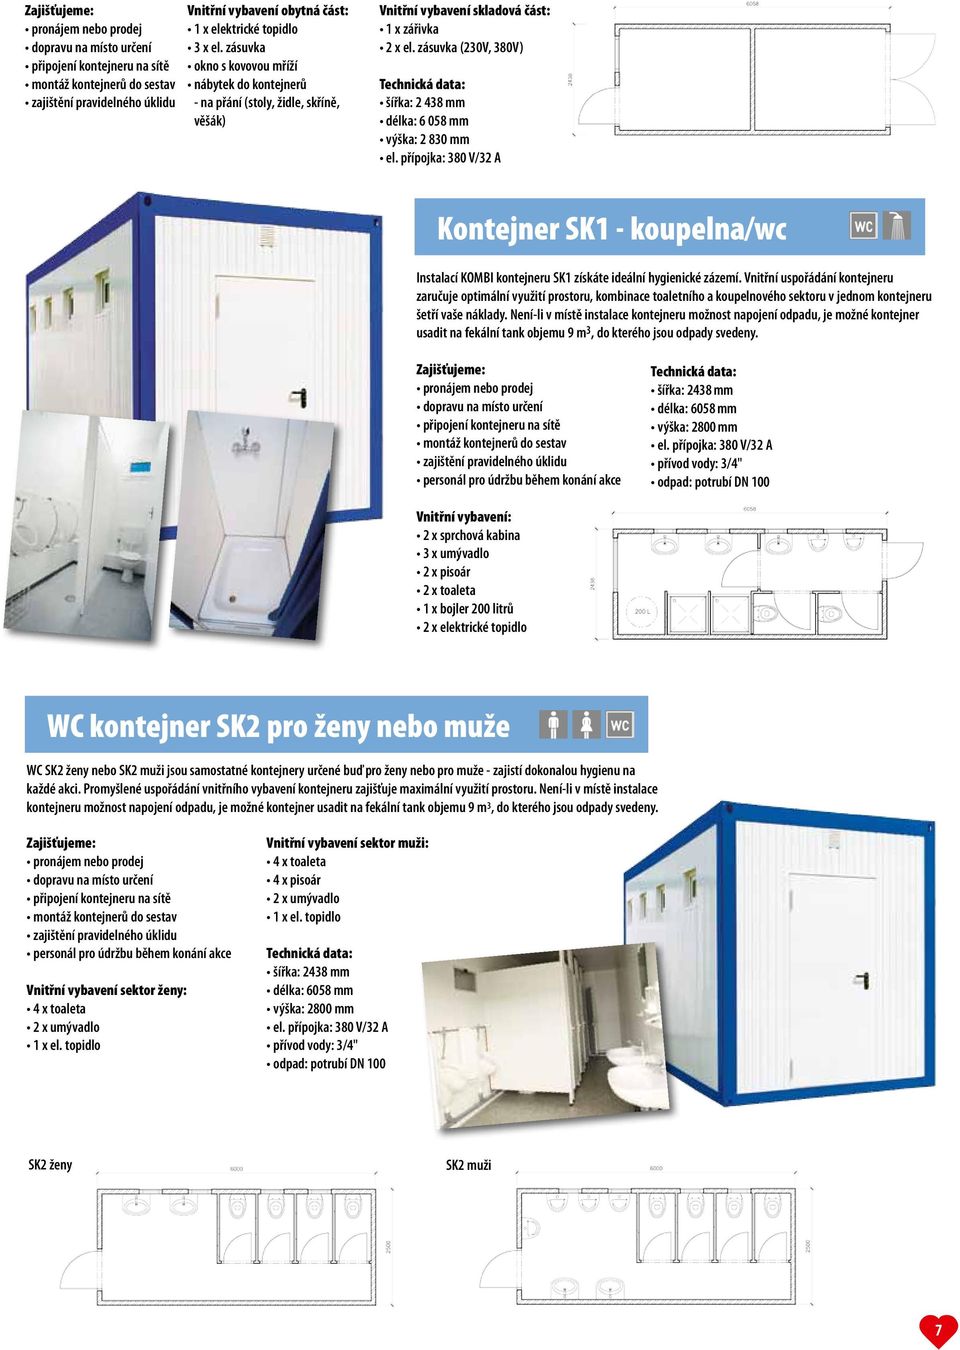 zásuvka (230V, 380V) šířka: 2 438 mm délka: 6 058 mm výška: 2 830 mm Kontejner SK1 - koupelna/wc Instalací KOMBI kontejneru SK1 získáte ideální hygienické zázemí.